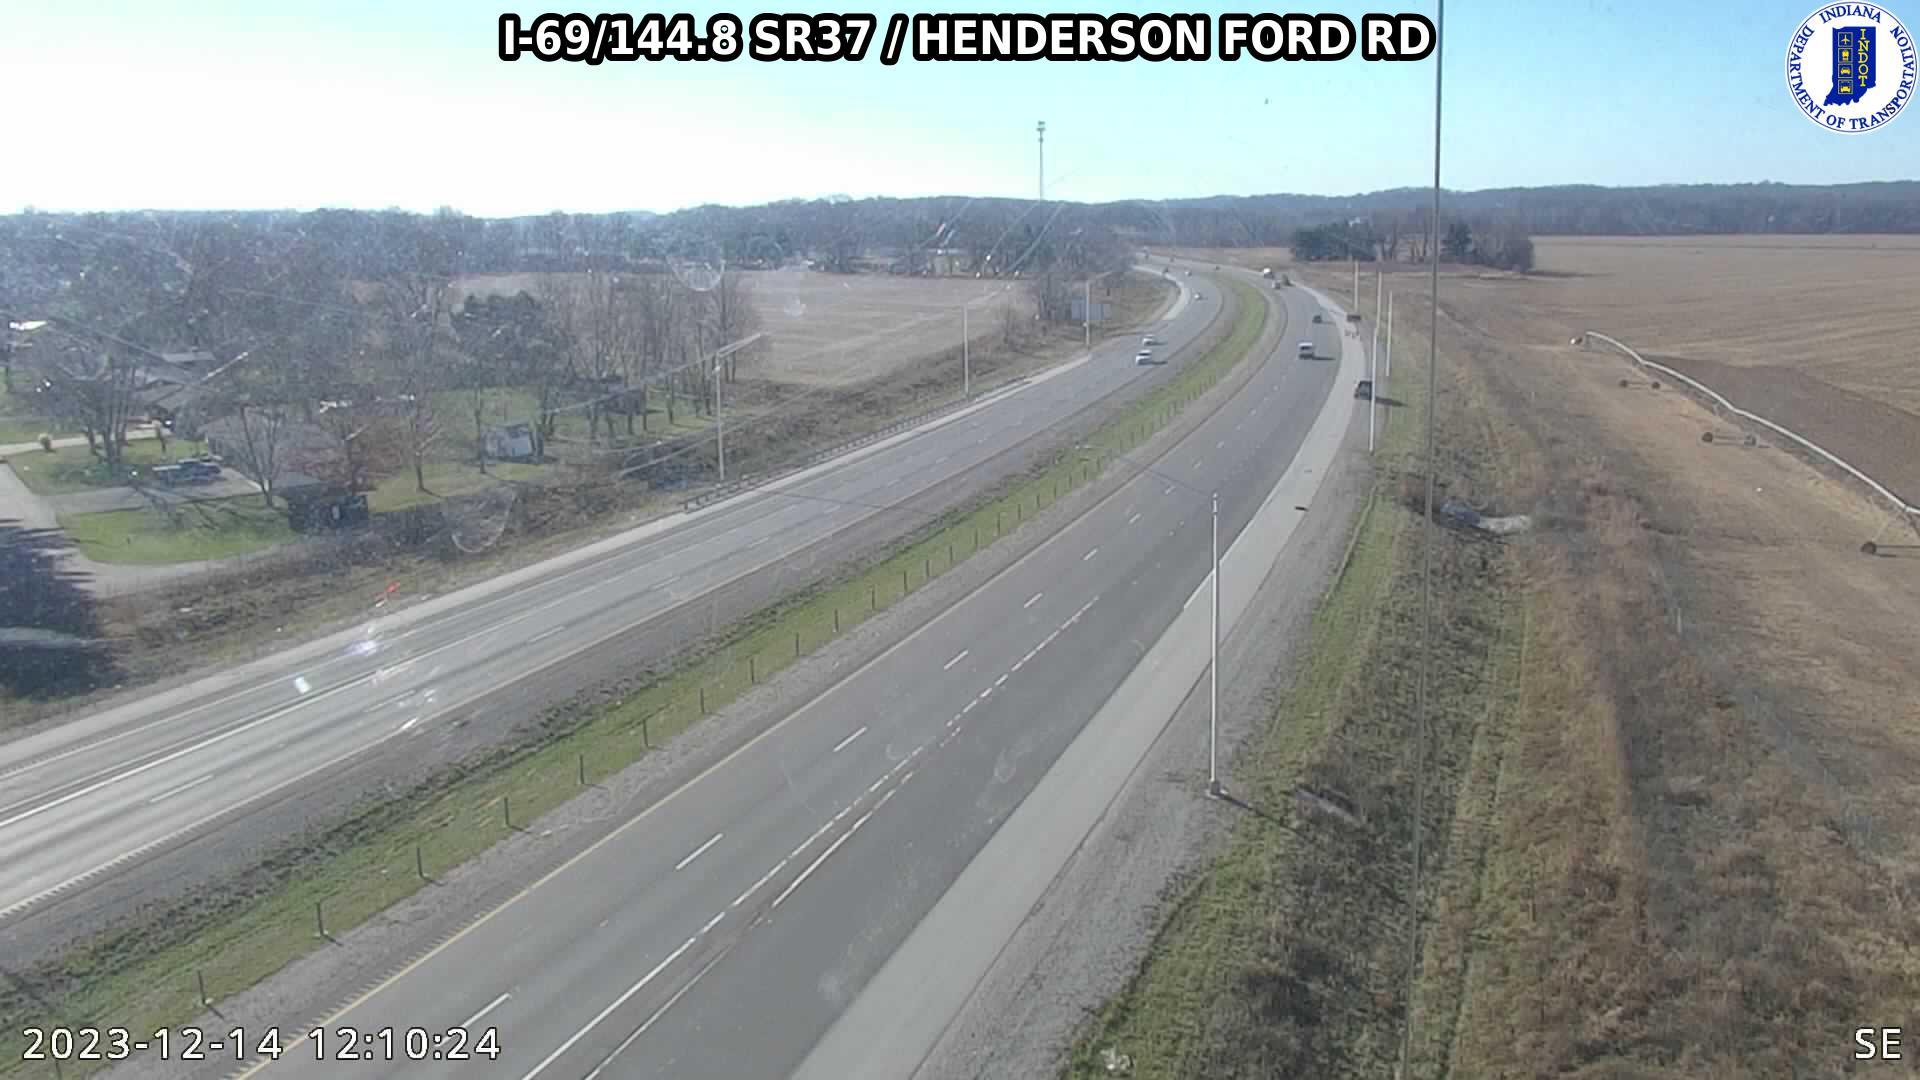 Adams: I-69: I-69/144.8 SR37 - HENDERSON FORD RD: I-69/144.8 SR37 - HENDERSON FORD RD Traffic Camera